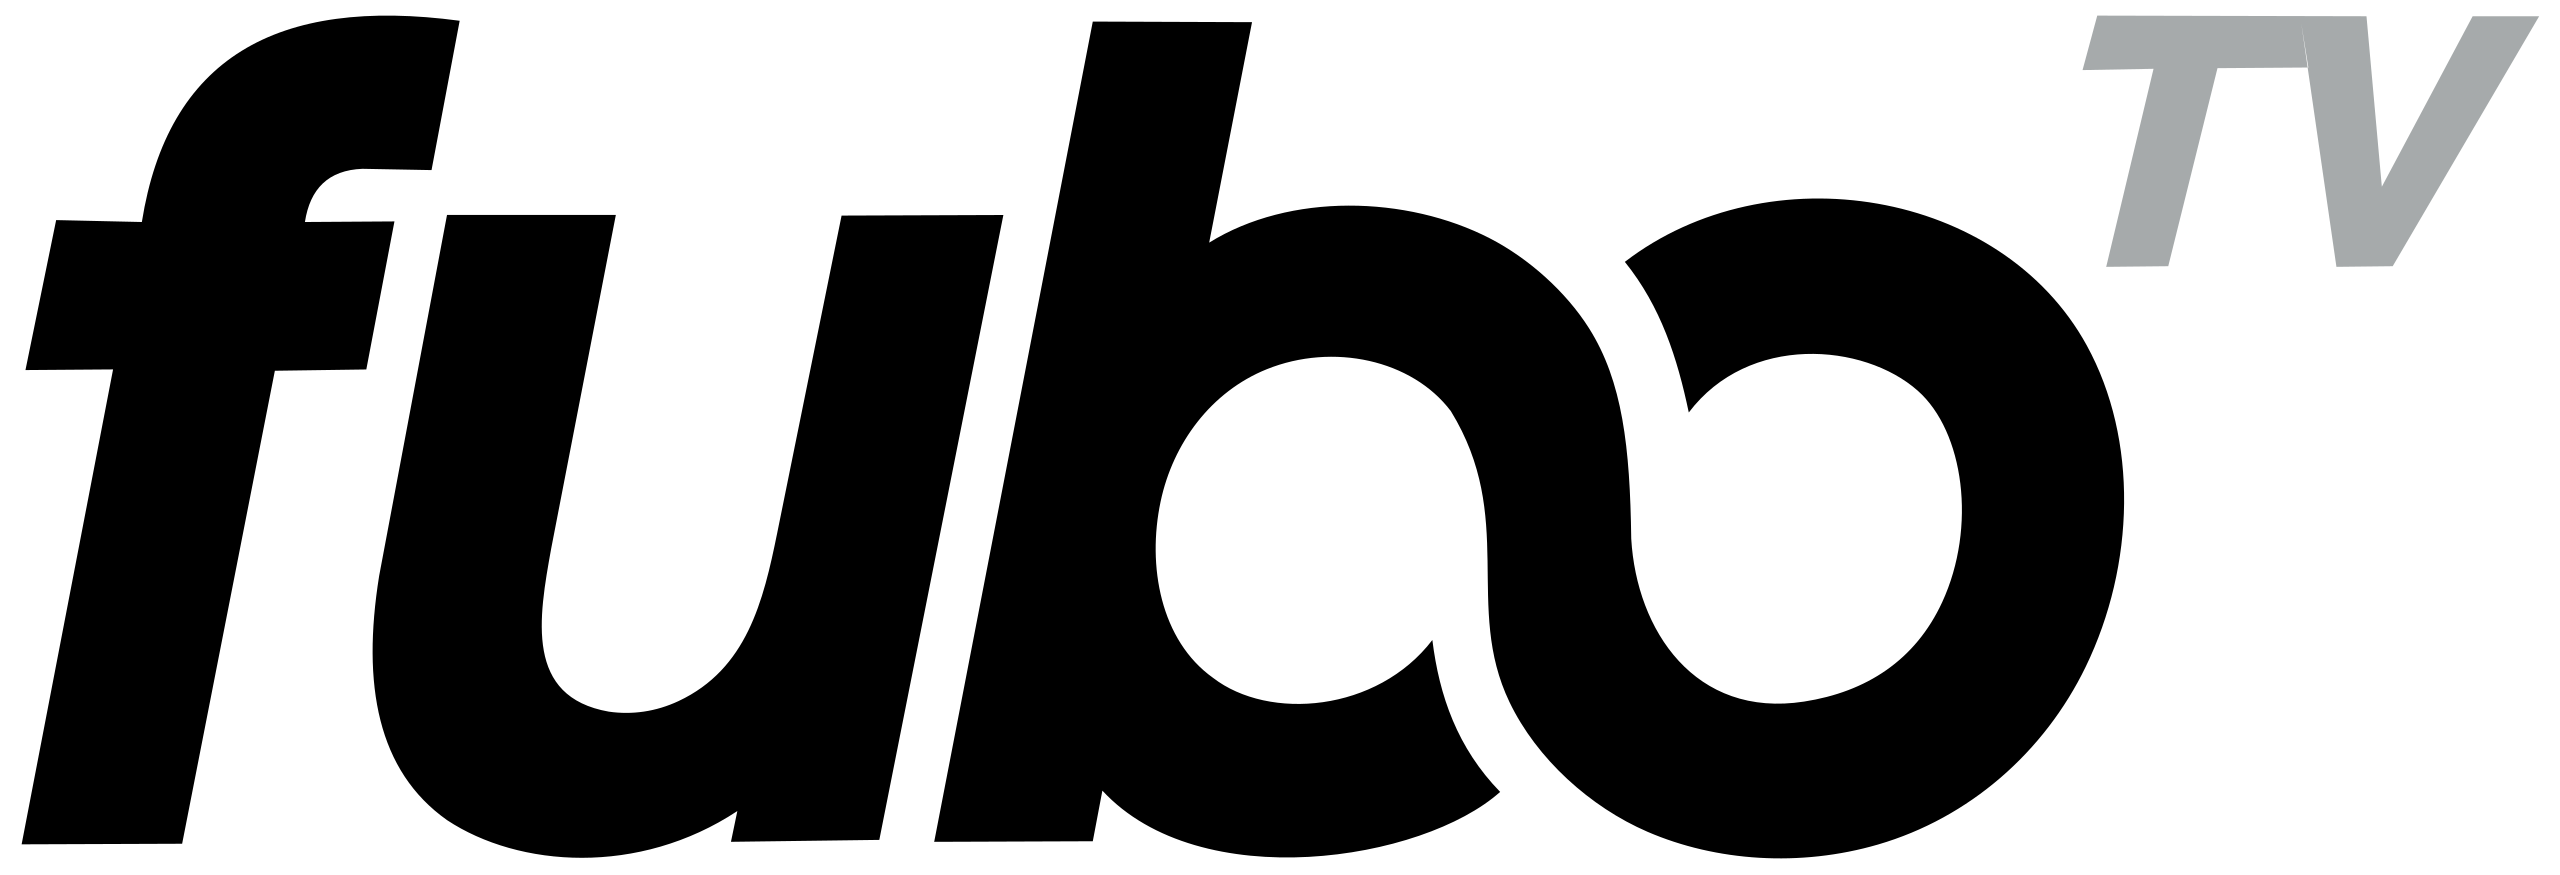 FuboTV_logo.svg